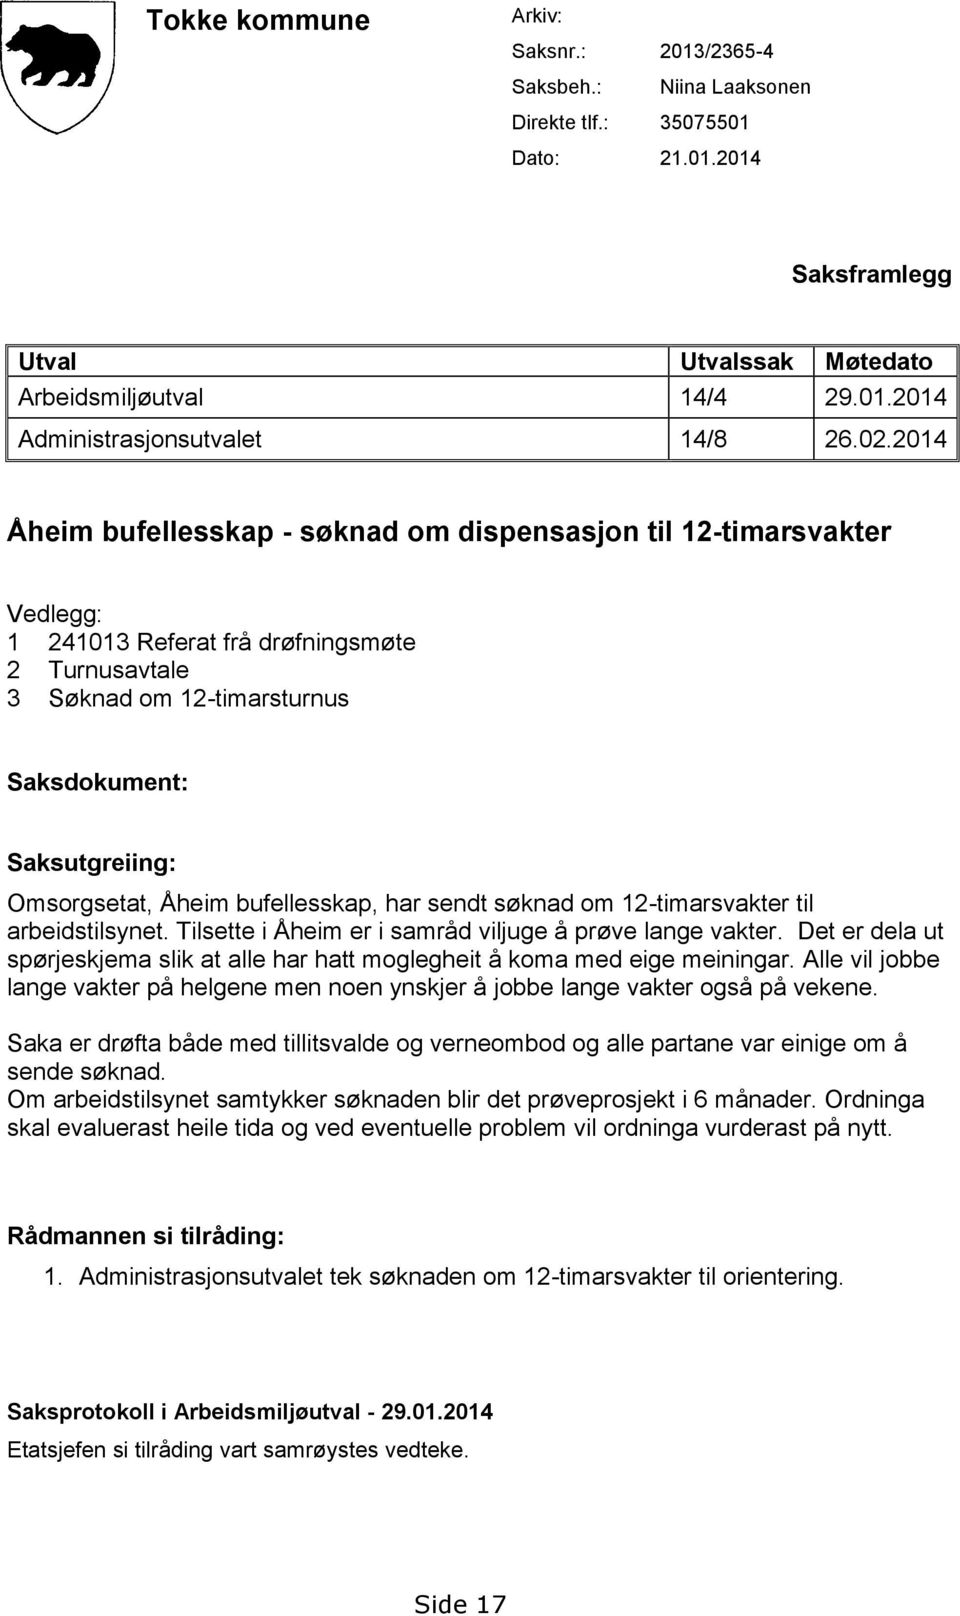 Omsorgsetat, Åheim bufellesskap, har sendt søknad om 12-timarsvakter til arbeidstilsynet. Tilsette i Åheim er i samråd viljuge å prøve lange vakter.